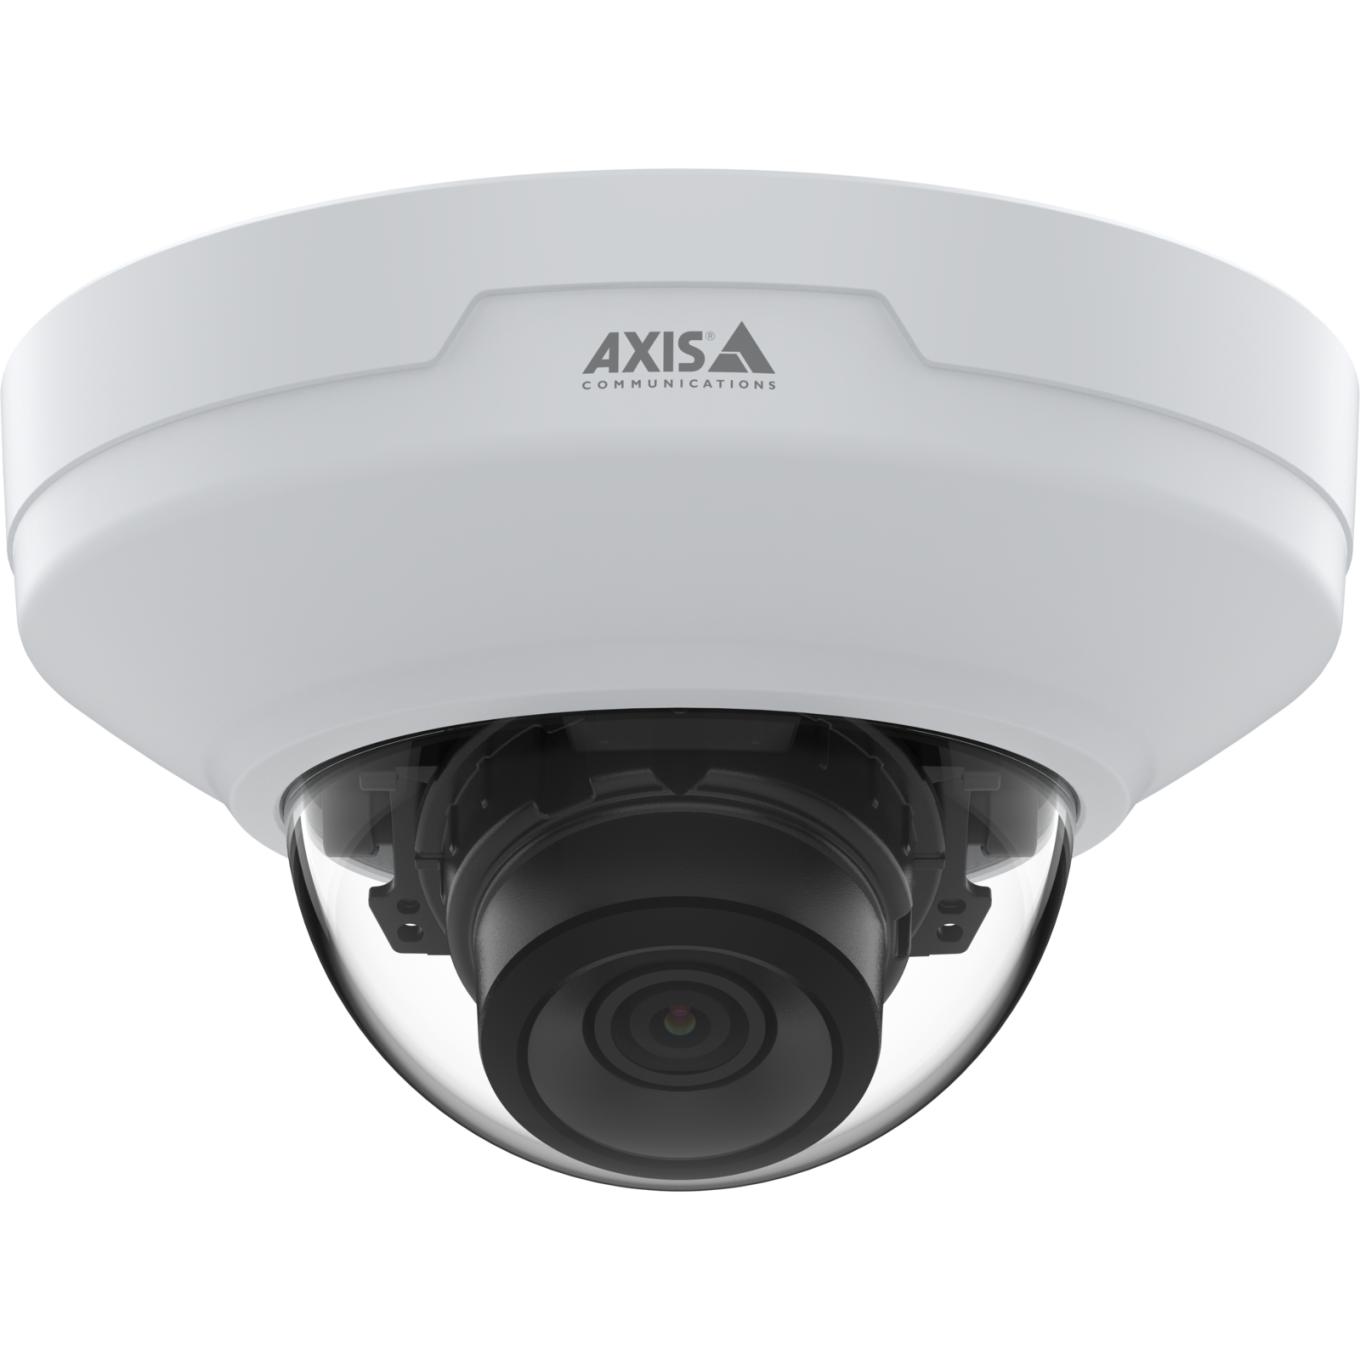 AXIS M4215-LV Dome Camera, vue de face